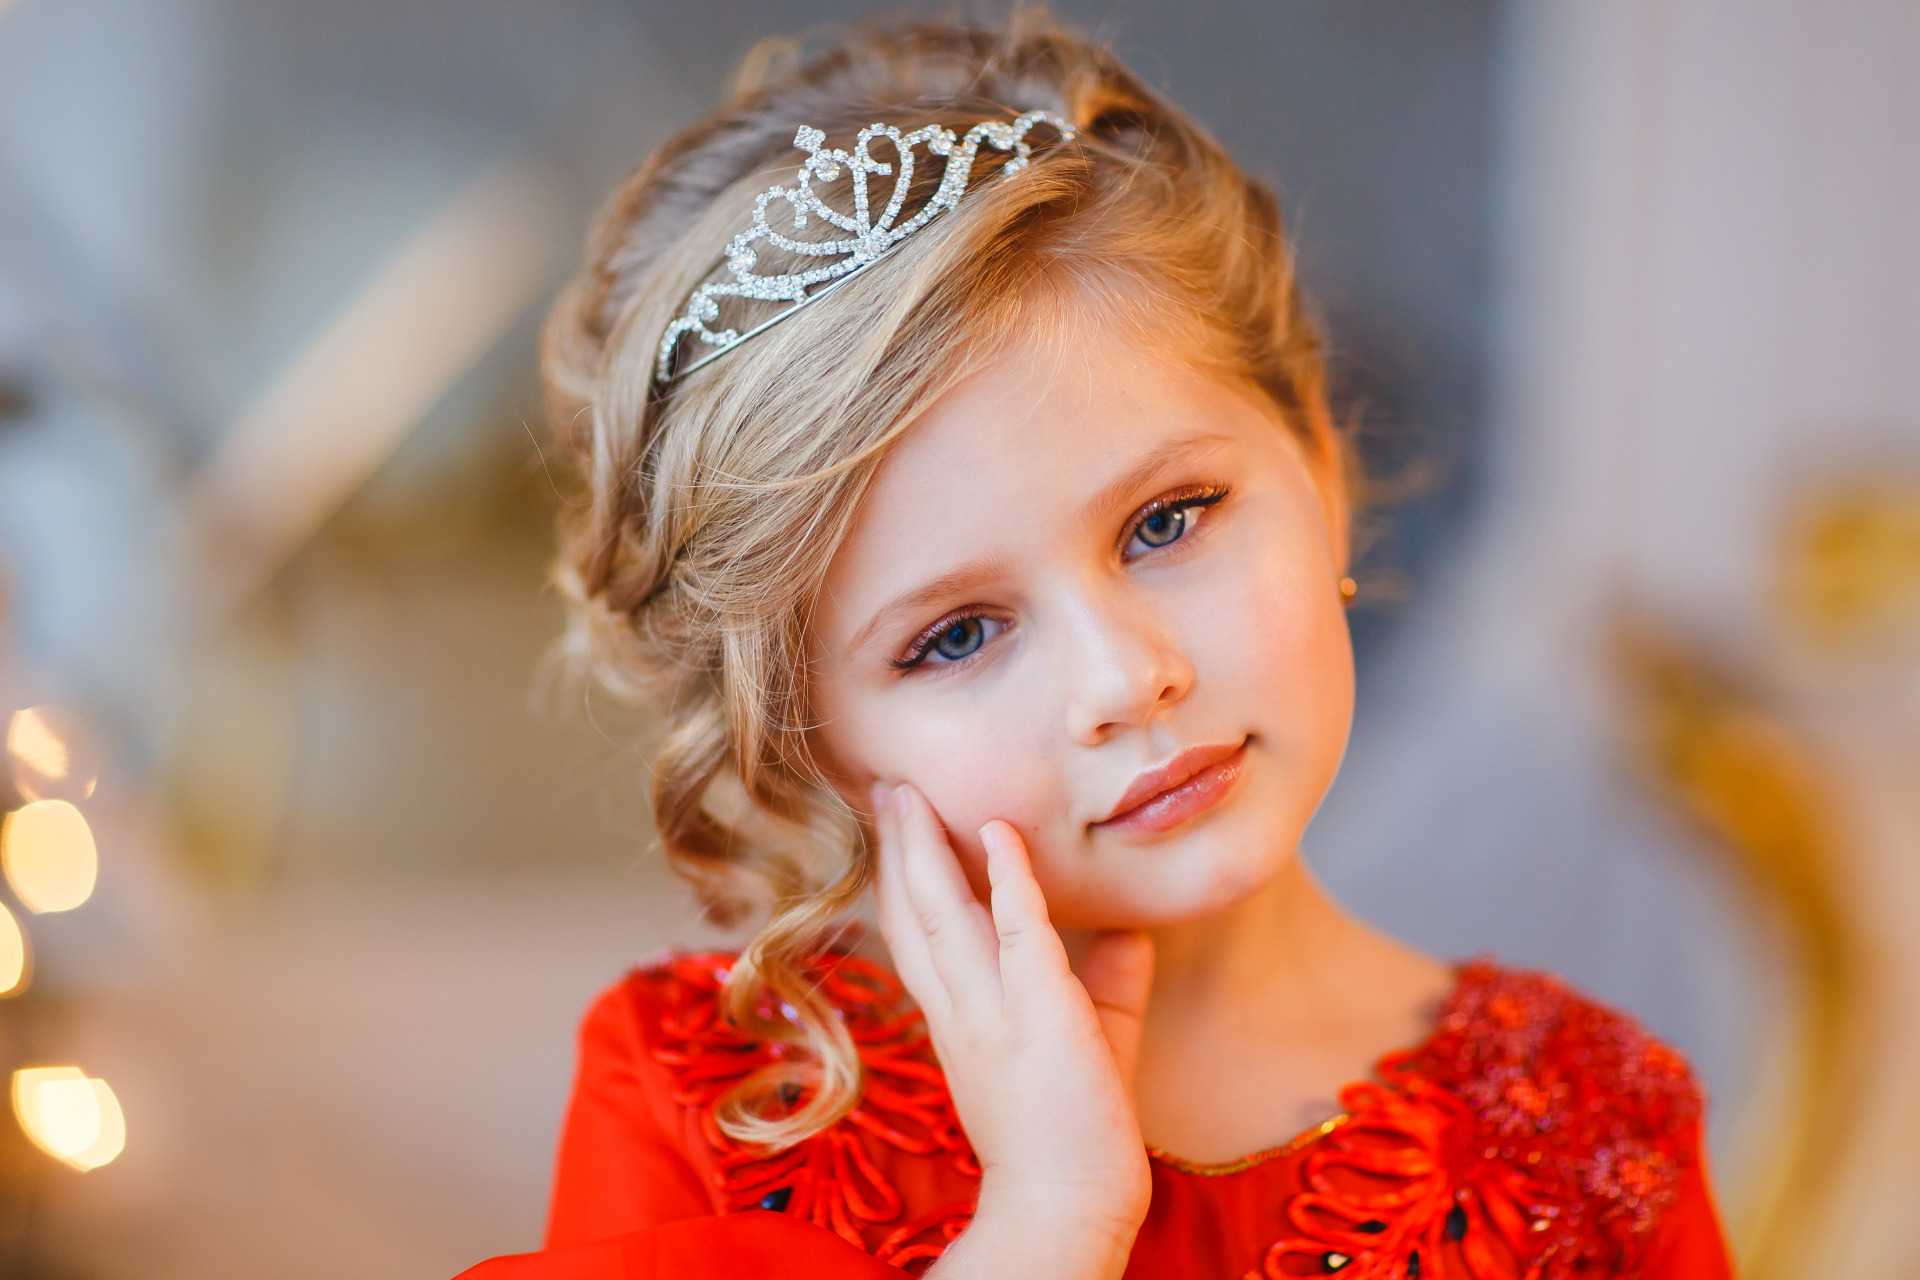 О детском макияже: для фотосессии ребенка, красивые примеры на возраст 10 лет